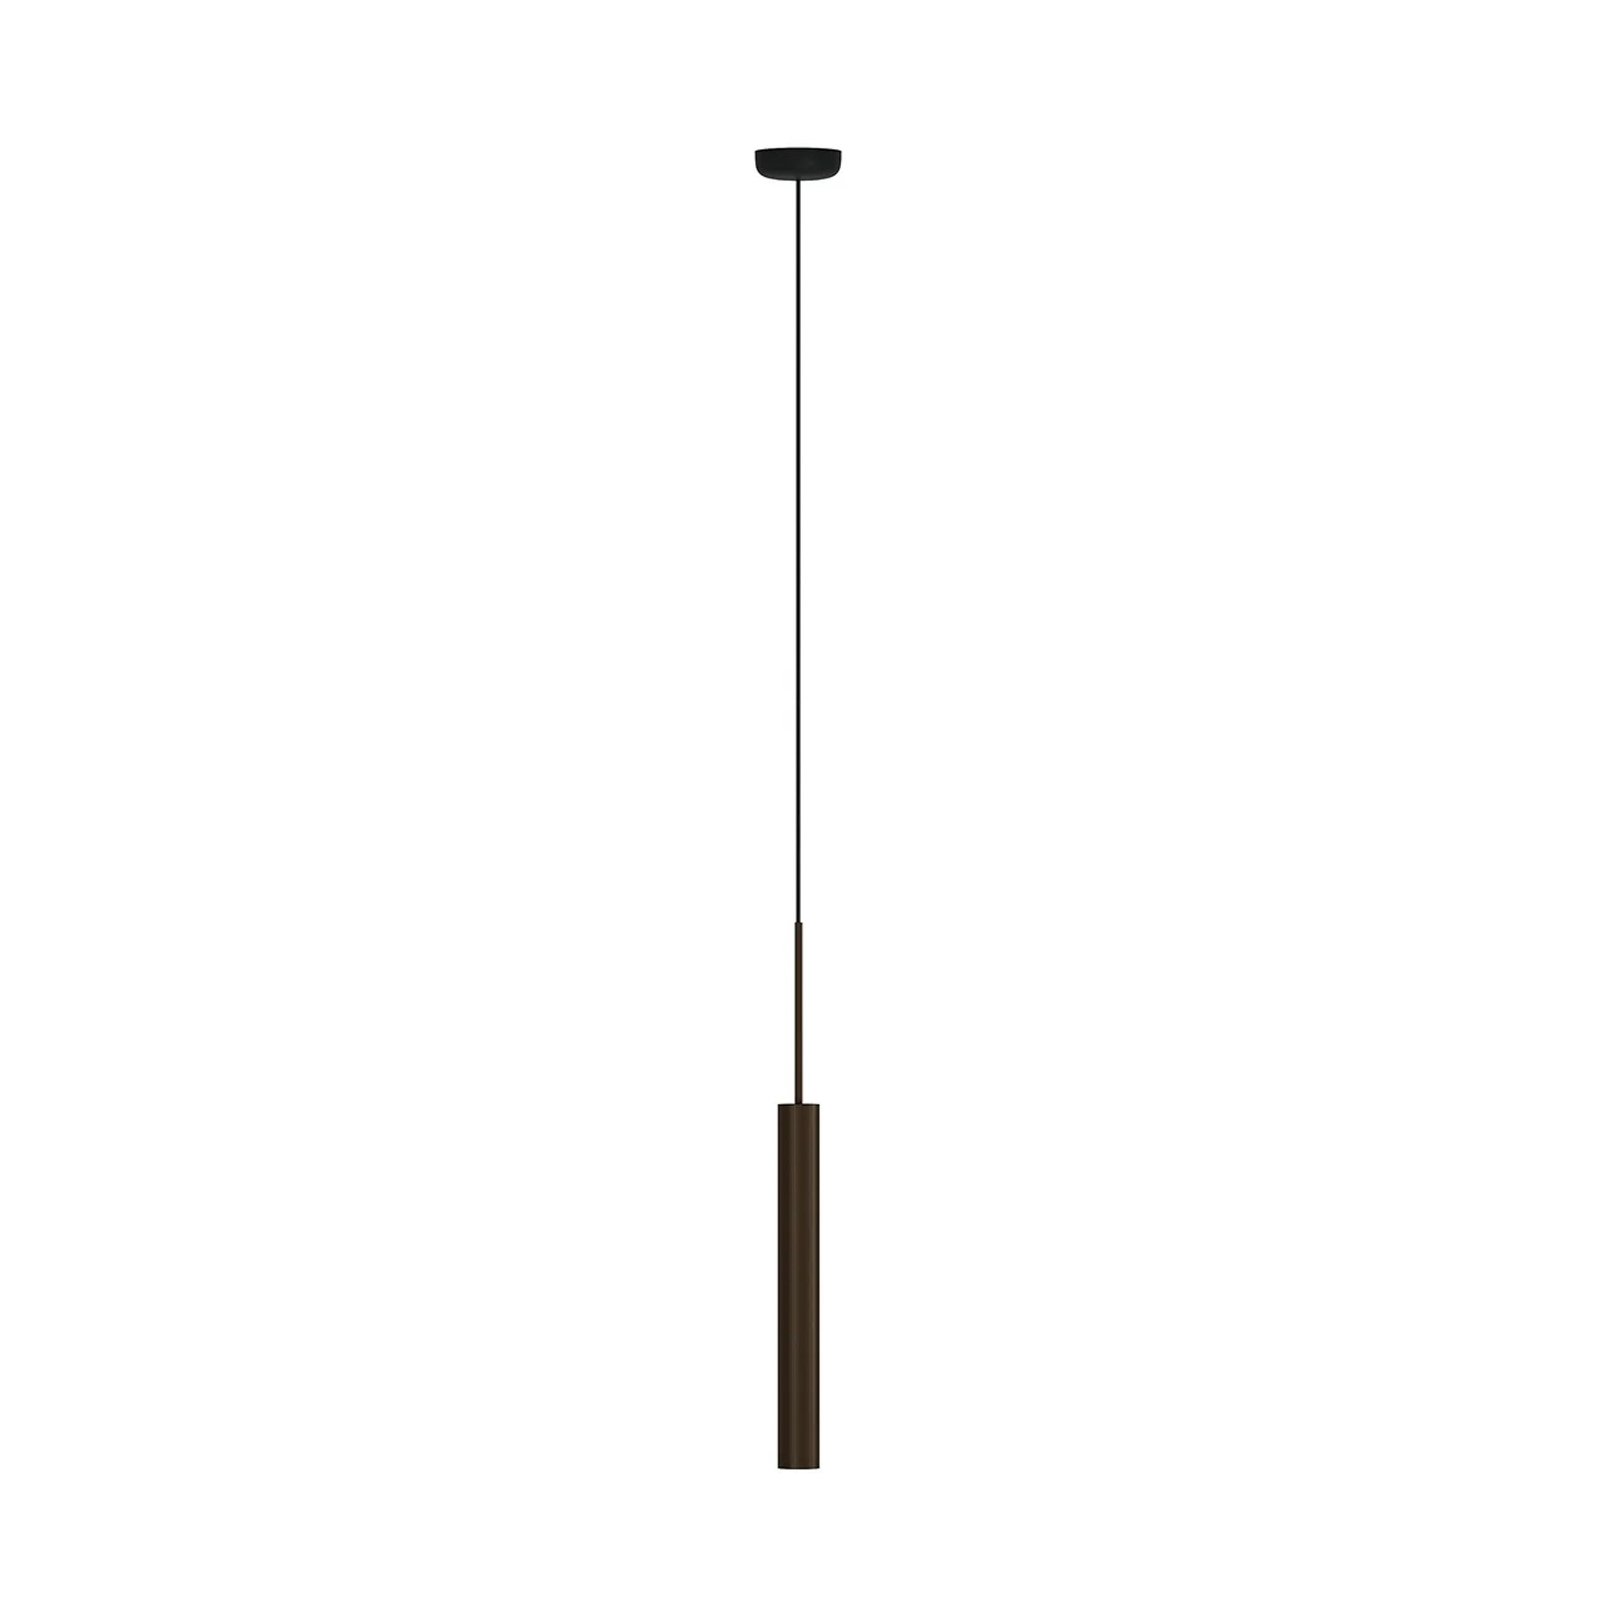 Audo hanglamp Tubulaire, 48 cm, bronskleurig, aluminium